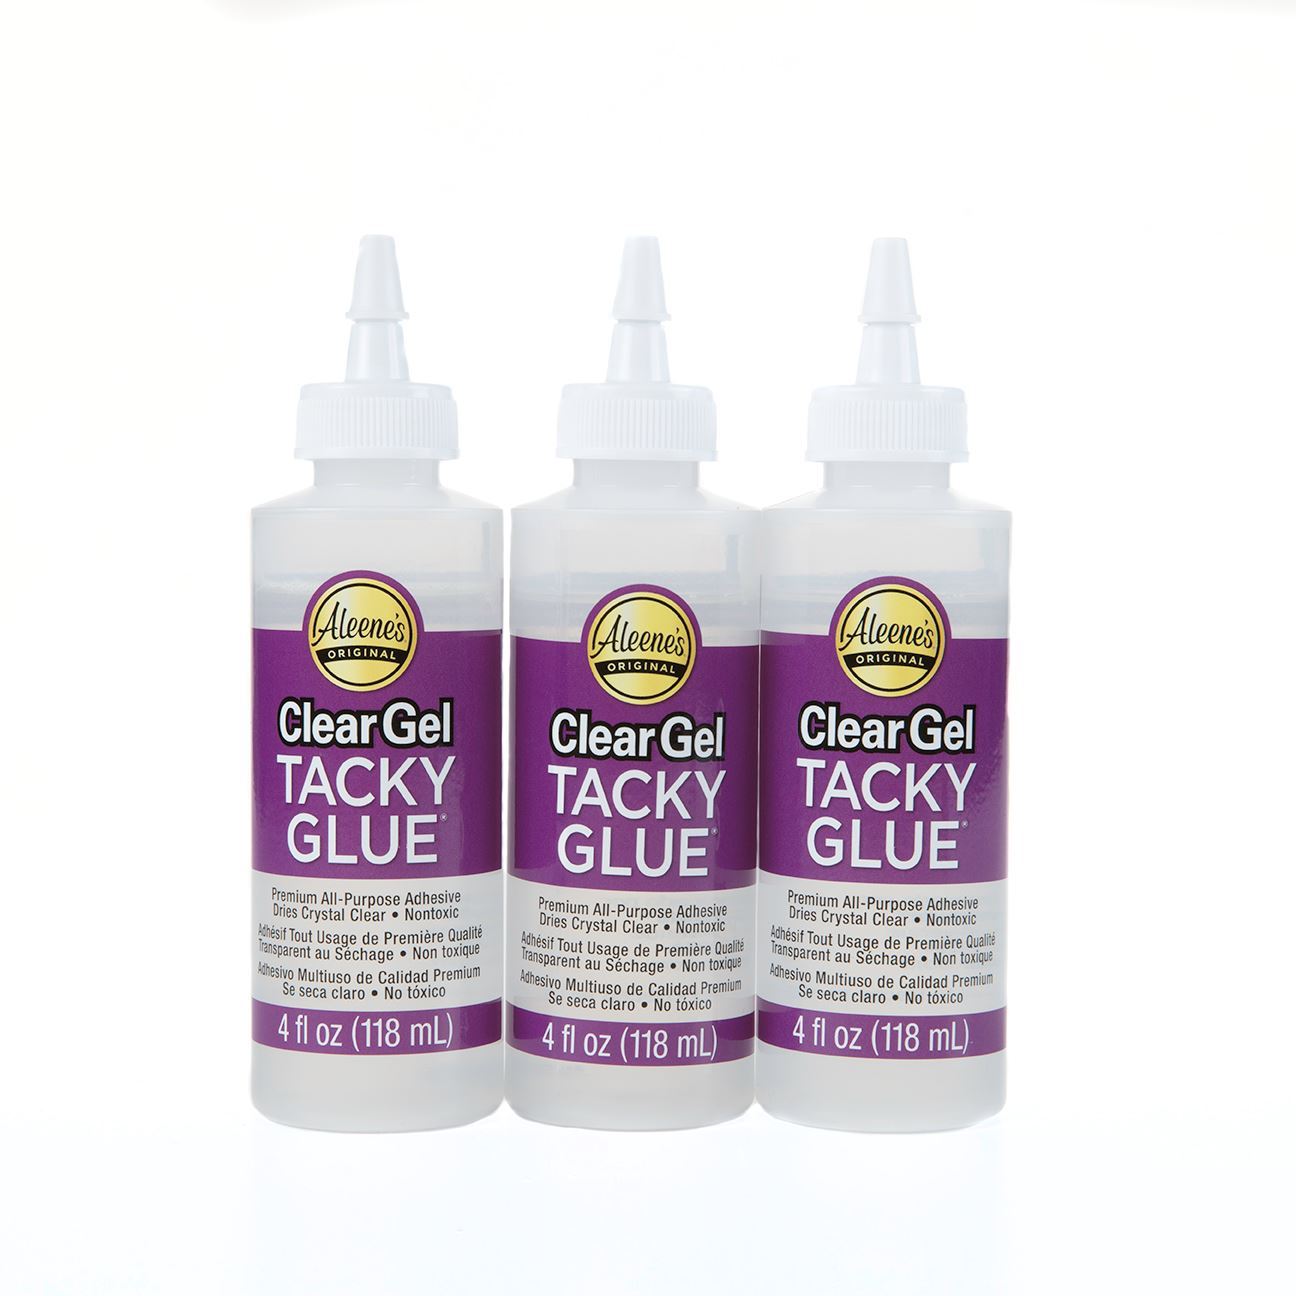 Always Ready Clear Gel Tacky Glue 118 ml (4oz.)